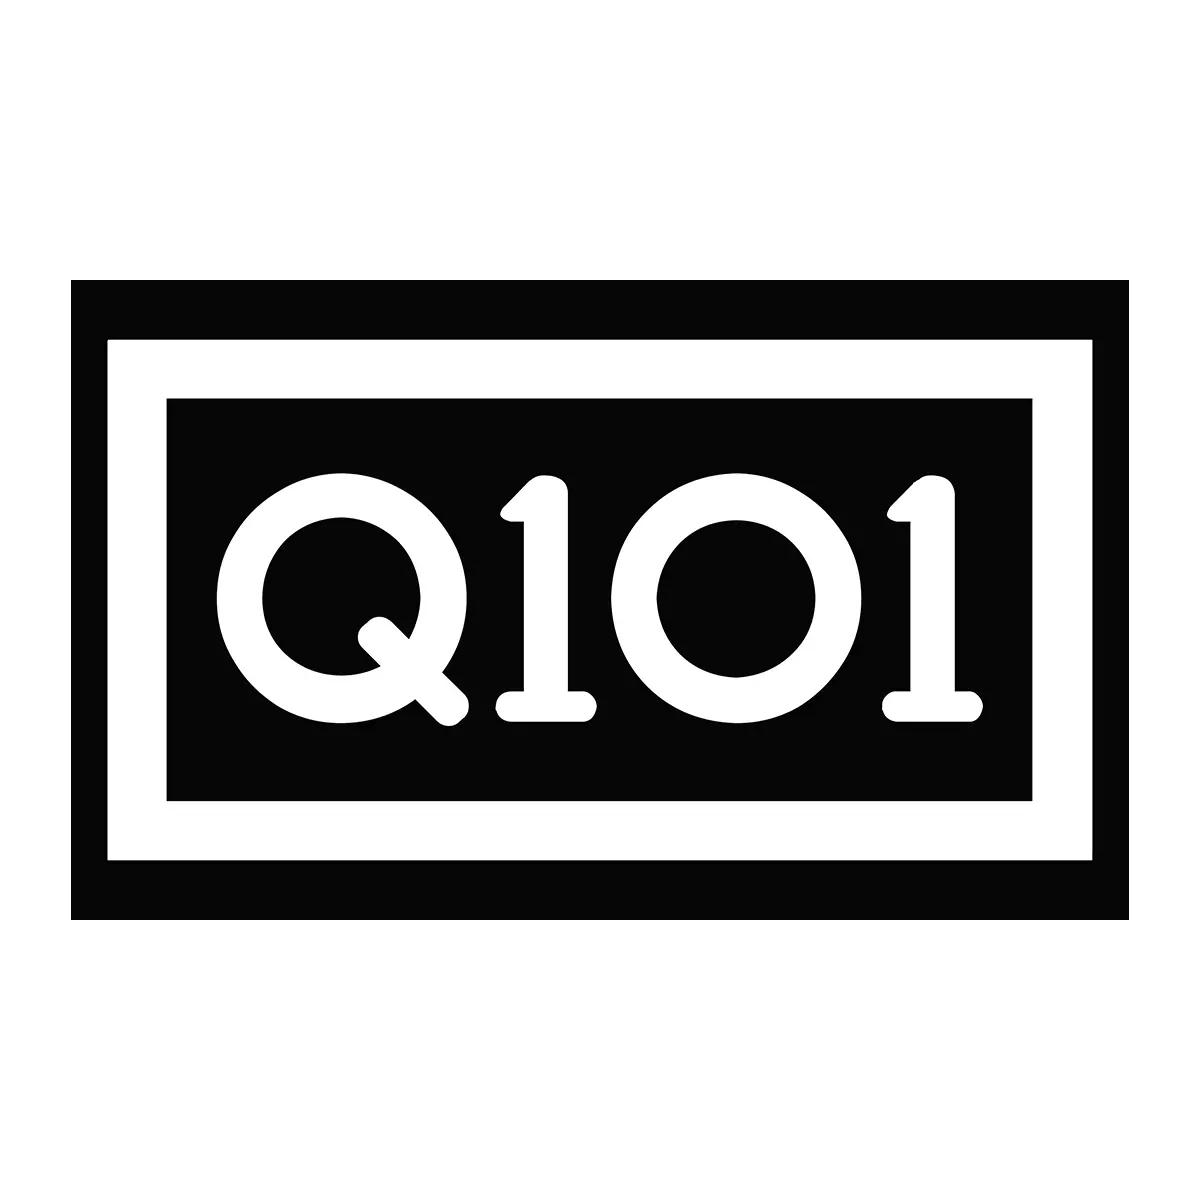 Q101